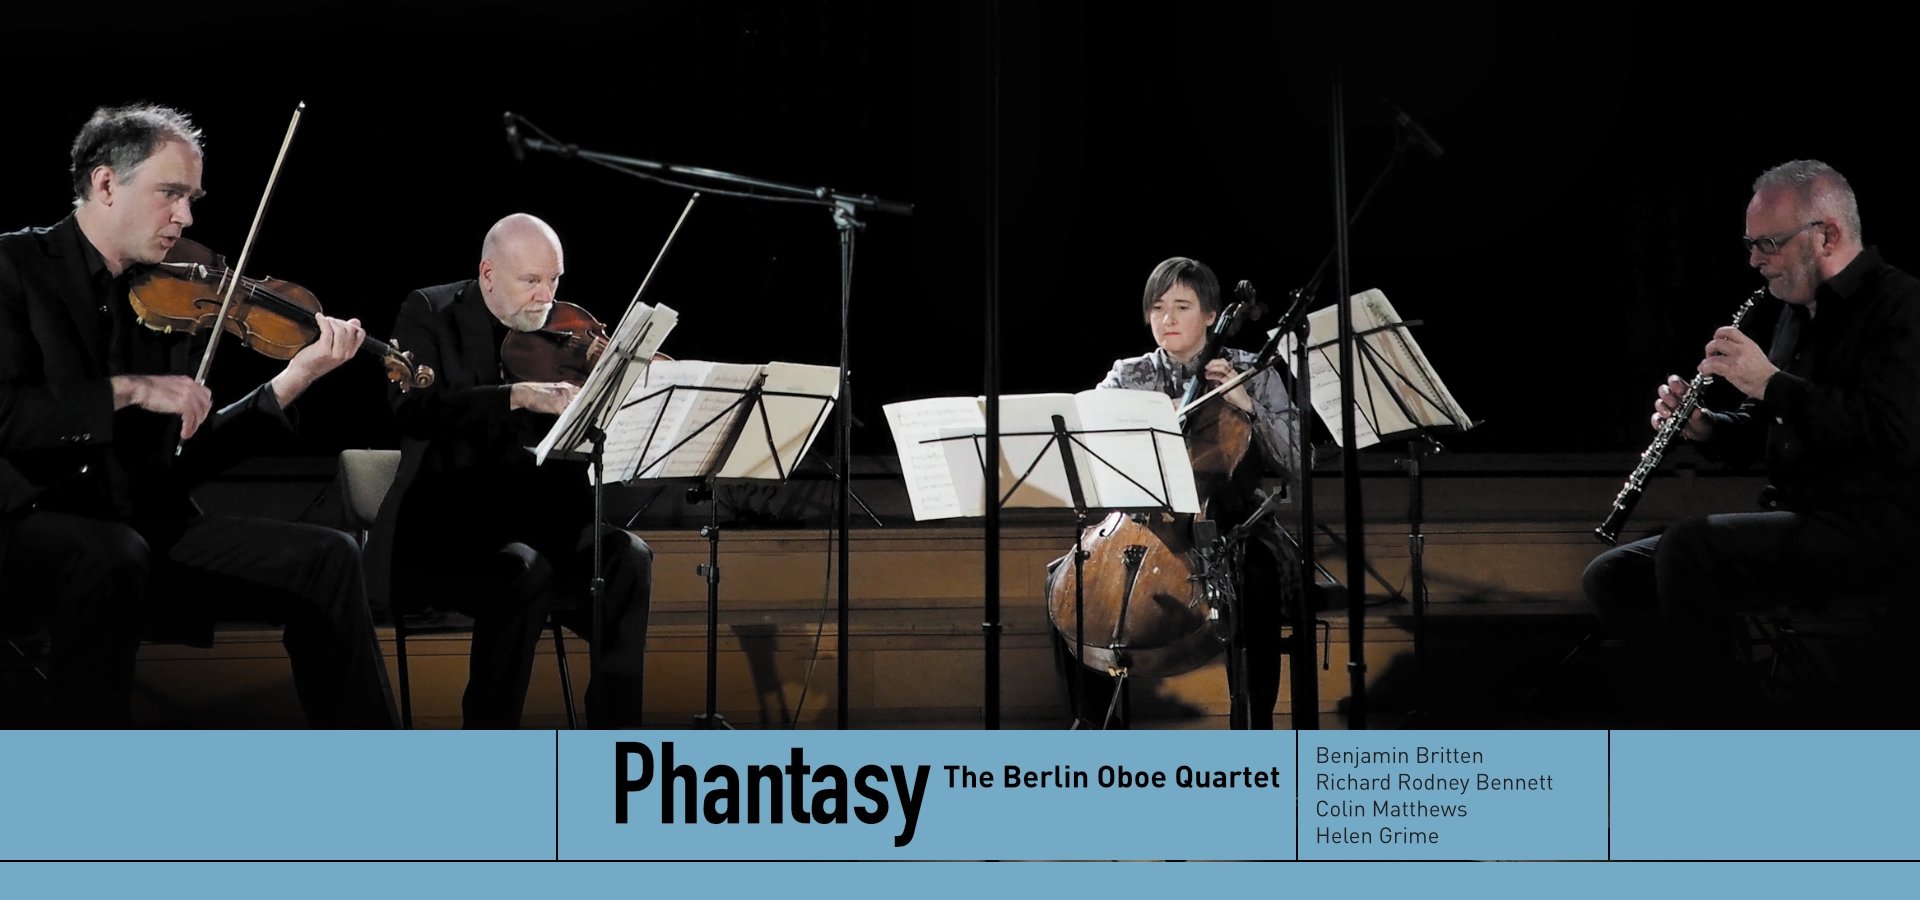 Artwork für das Album „Phantasy“ The Berlin Oboe Quartet